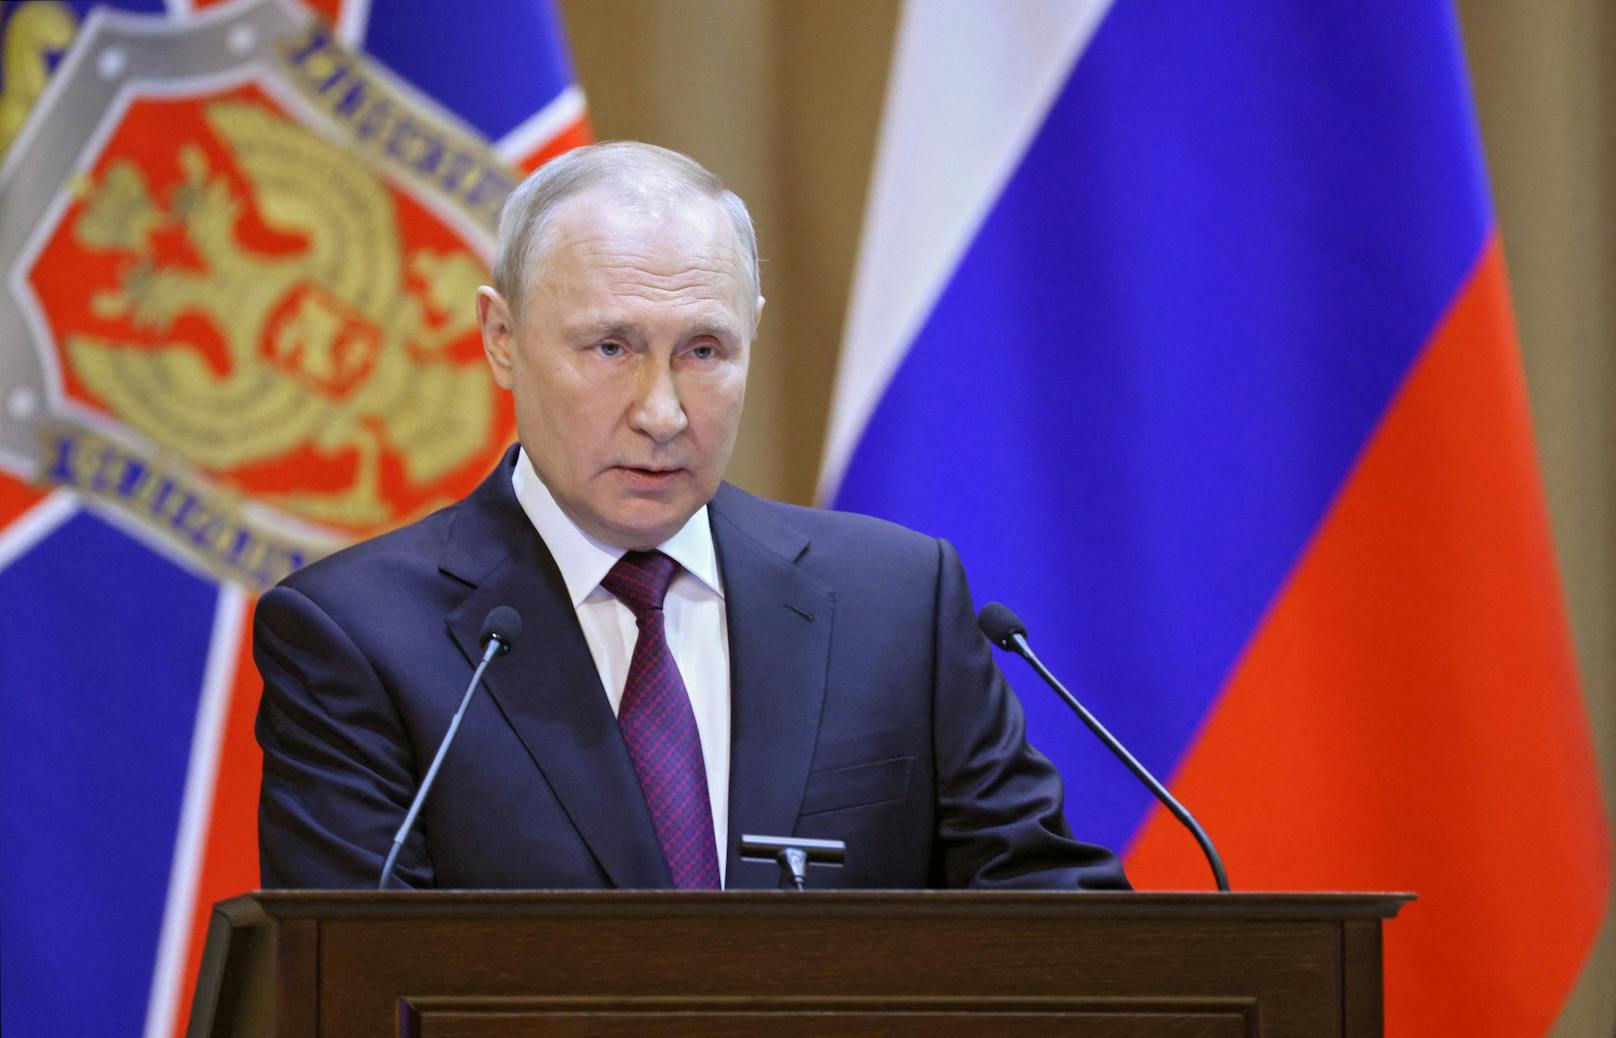 Wladimir Putin lässt sich eine Kandidatur offem, hinter seinem Rücken sollen Verhandlungen mit der Ukraine laufen.